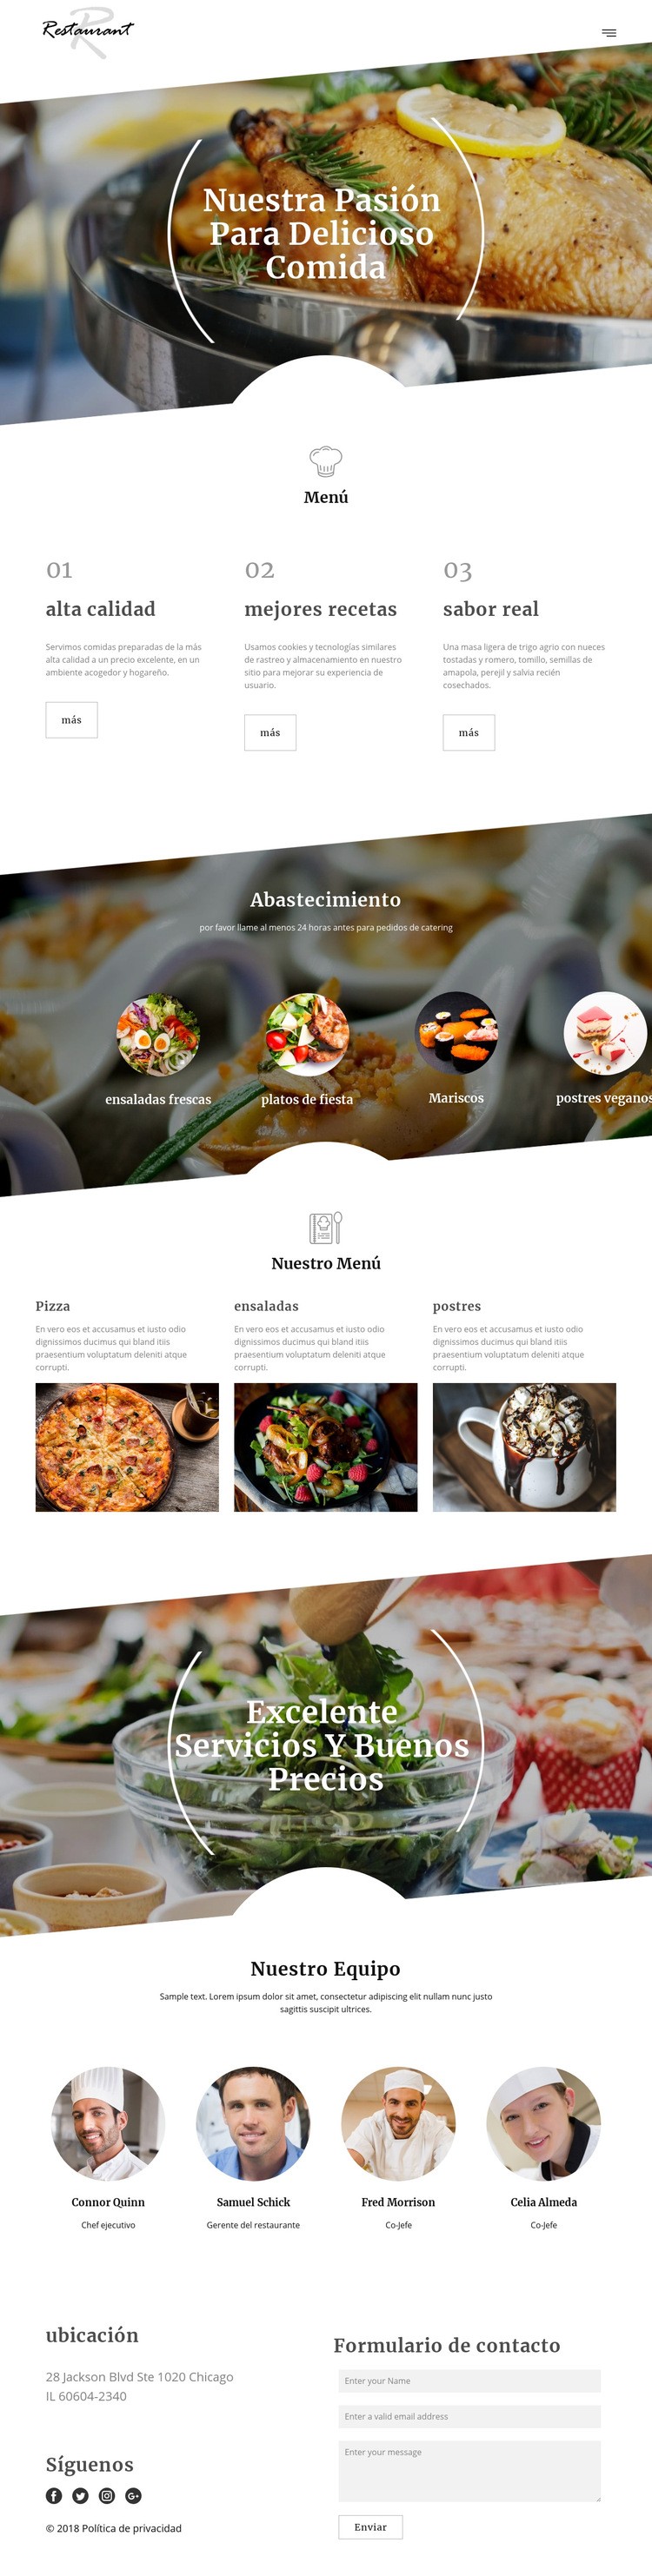 Recetas del chef ejecutivo Maqueta de sitio web